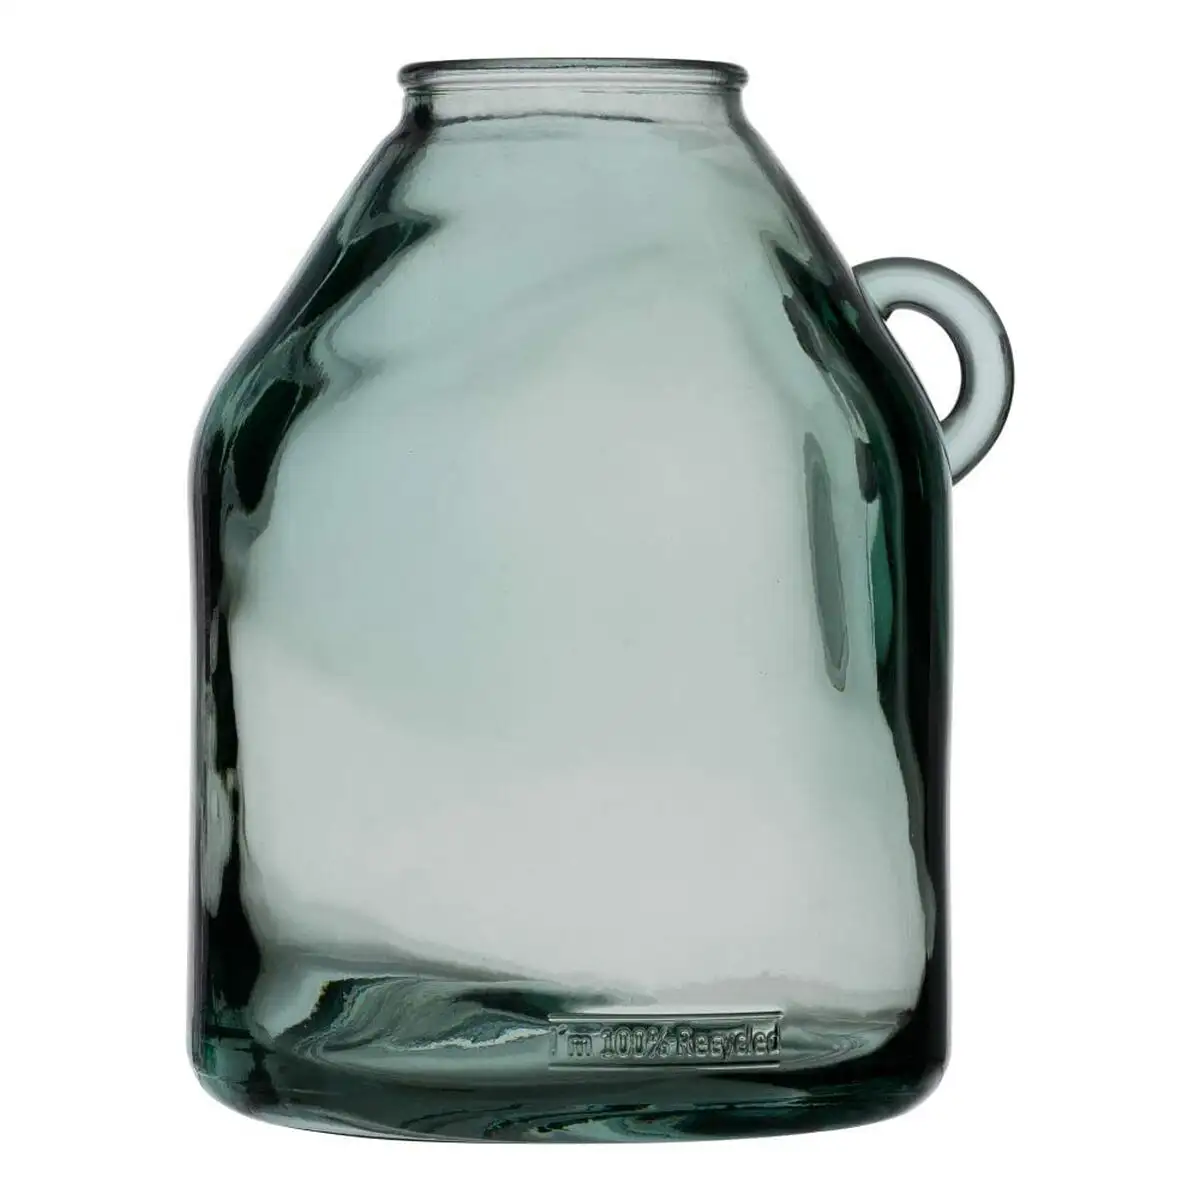 Vase vert verre recycle 21 x 21 x 25 5 cm_6093. Découvrez DIAYTAR SENEGAL - Là où le Choix Rencontre la Qualité. Parcourez notre gamme diversifiée et choisissez parmi des produits conçus pour exceller dans tous les aspects de votre vie.